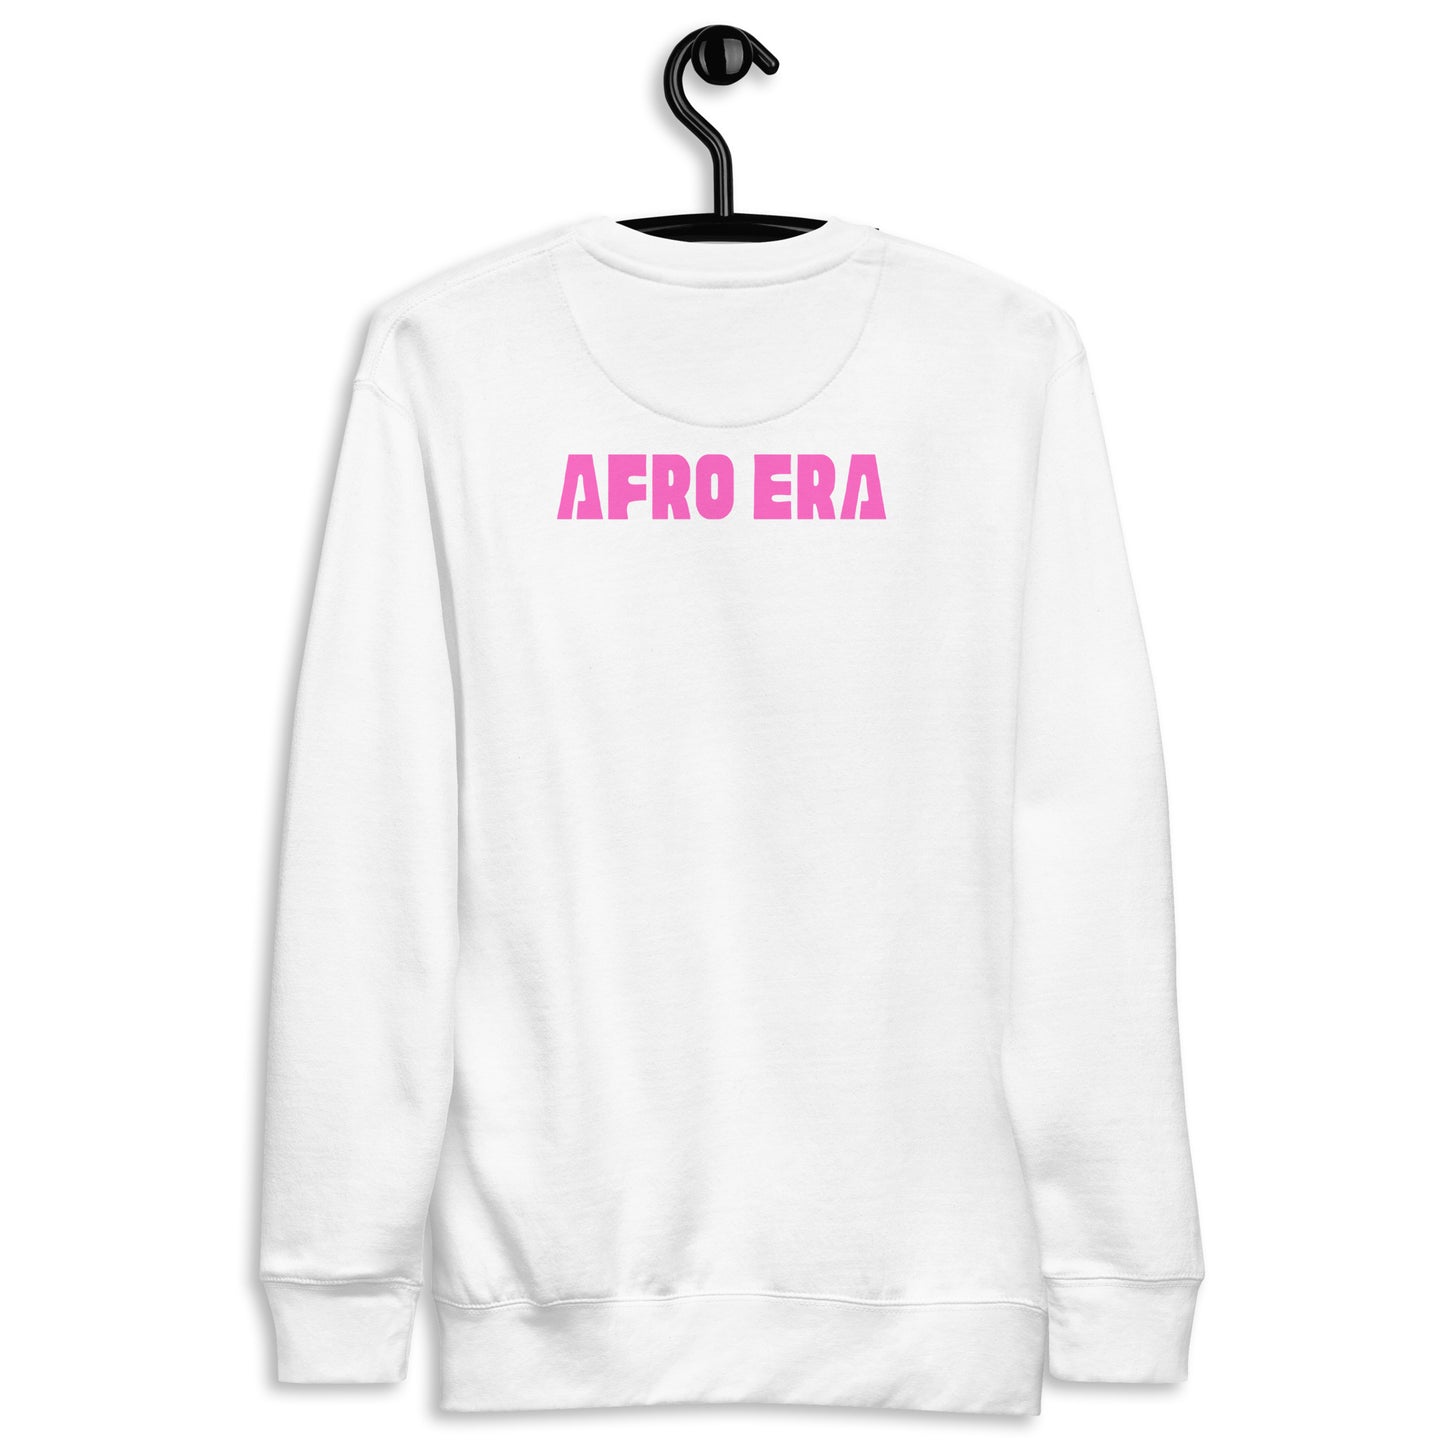 AFRO ERA Unisex Premium Sweatshirt